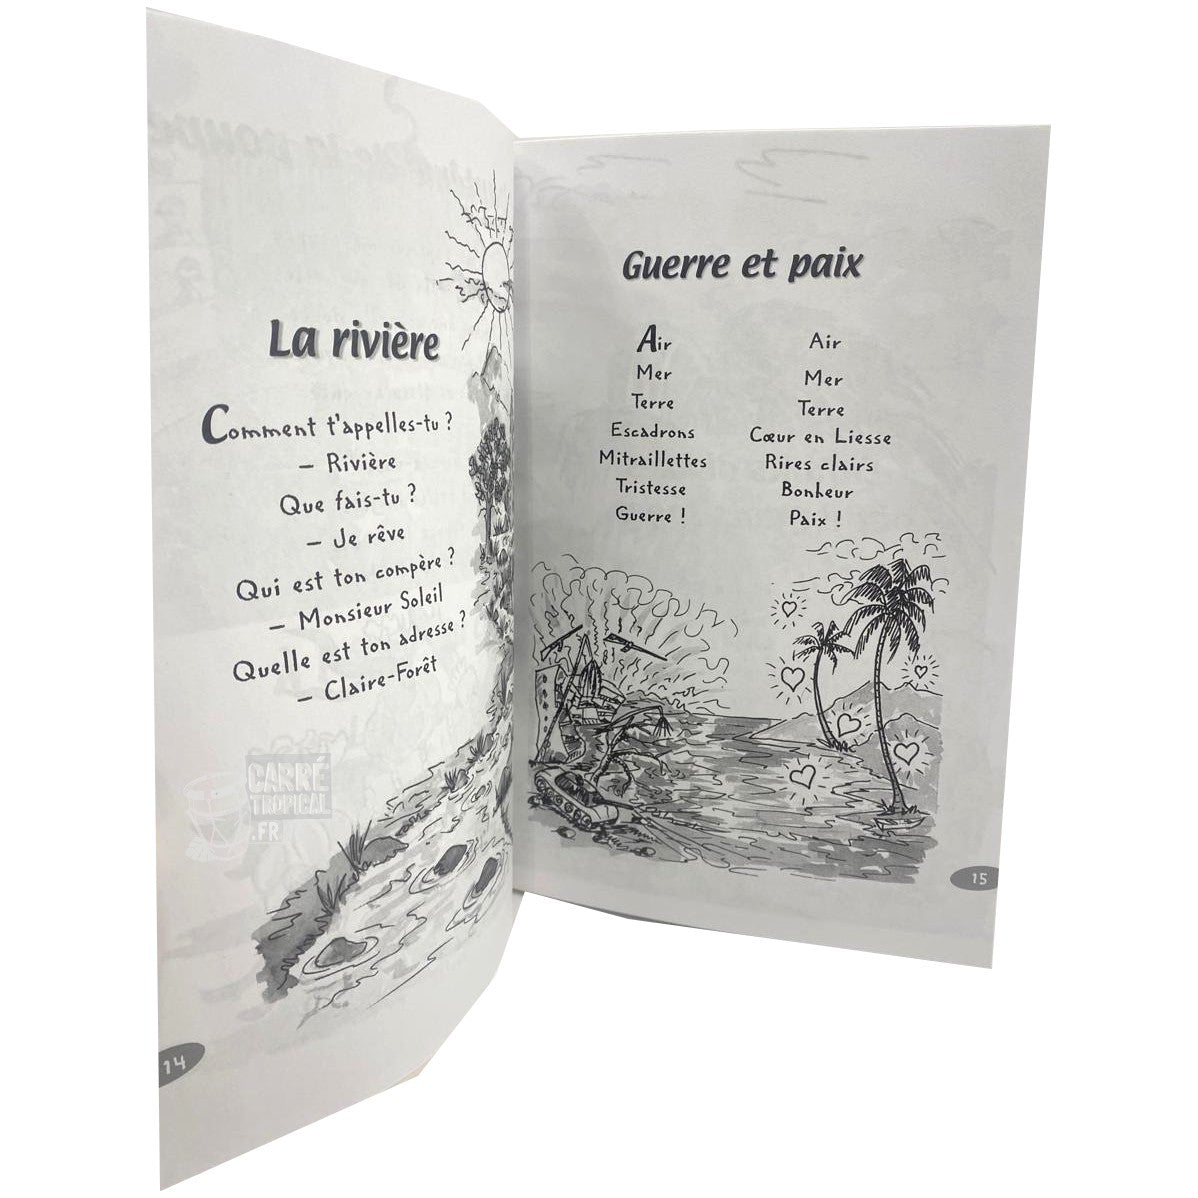 TIFANTINE COMPTINES 📖 délicieuse combinaison de mots | Par Elyse Telchid - Carré TropicalLivres